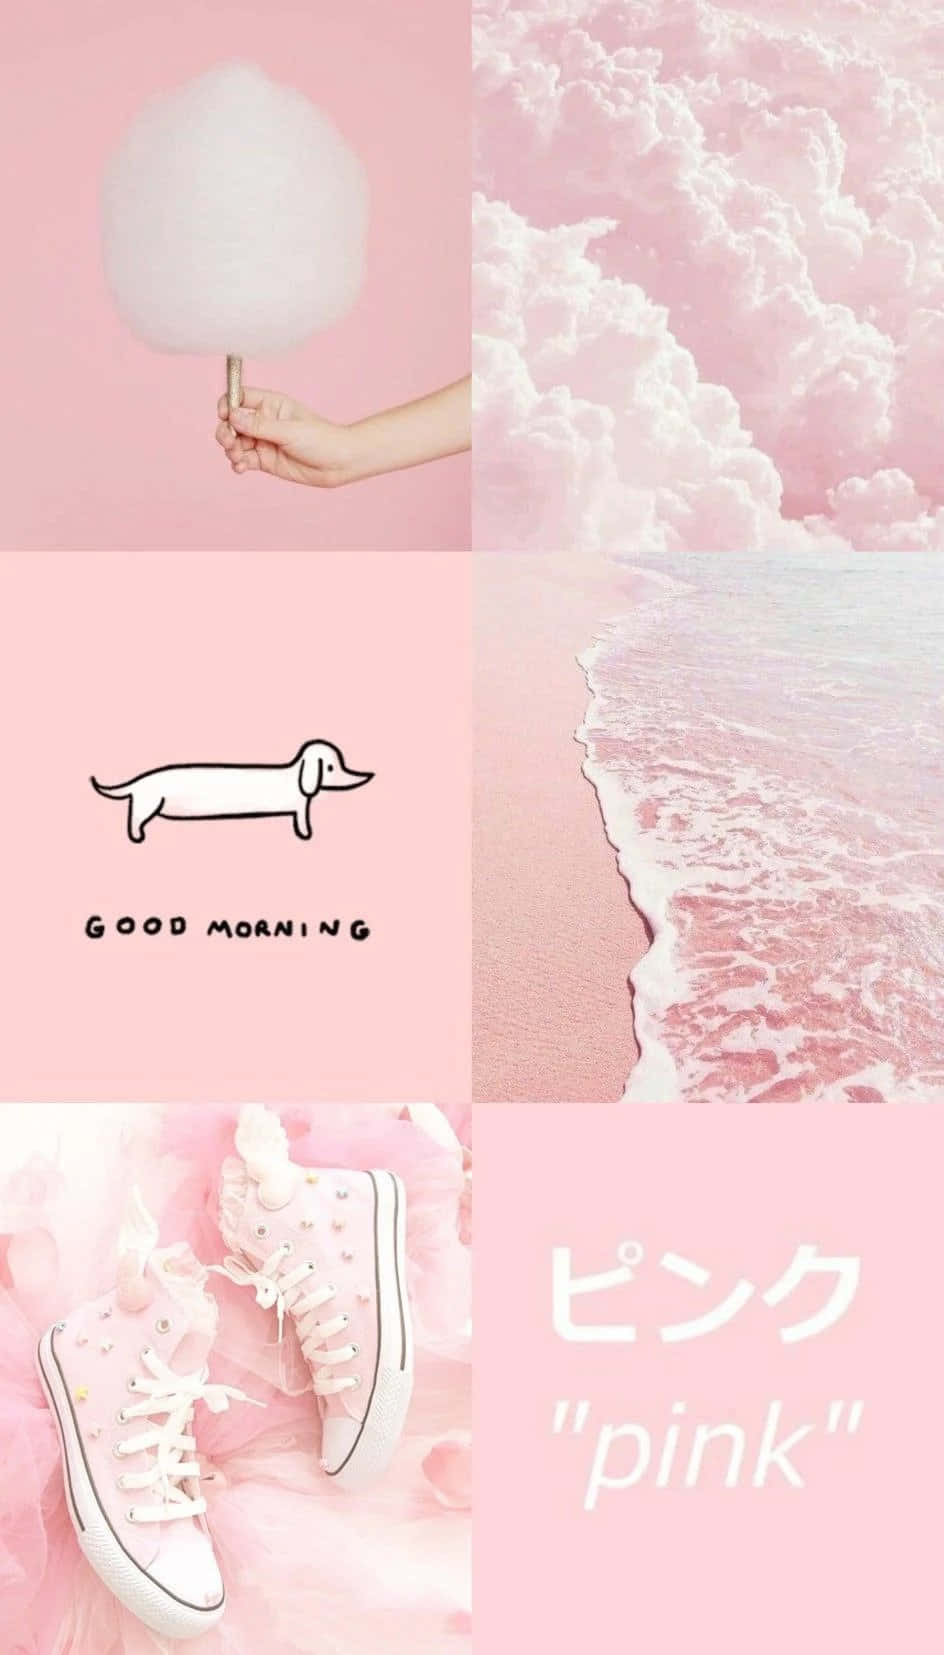 Benvenutinel Mondo Sognante Dell'estetica Pastel Pink